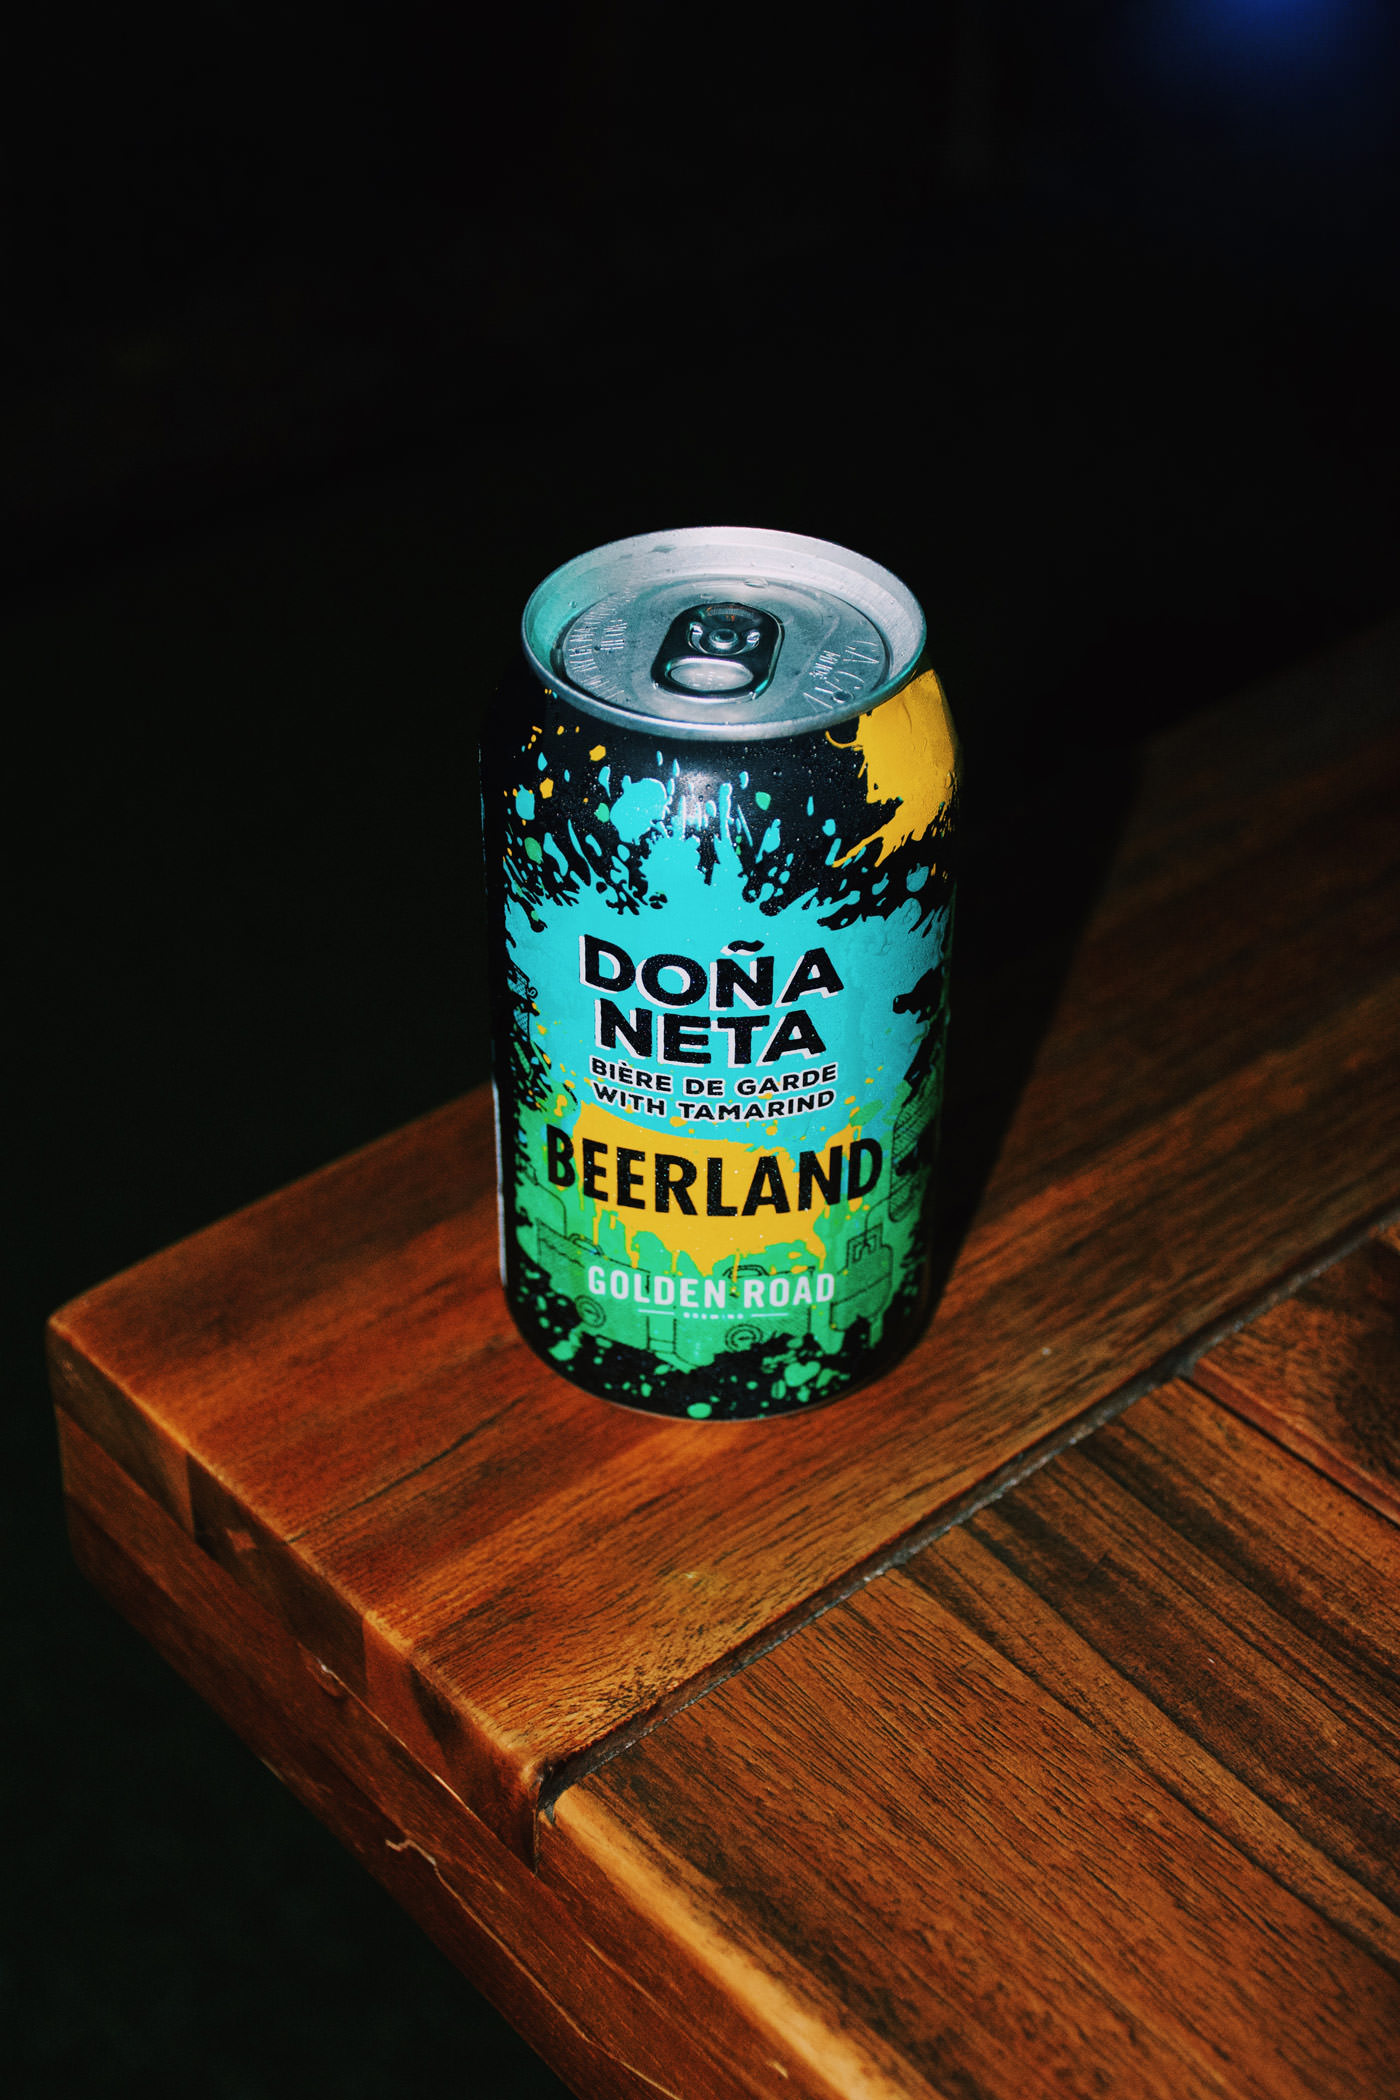 Dona Neta Golden Road Beer winner of Beerland on Viceland.